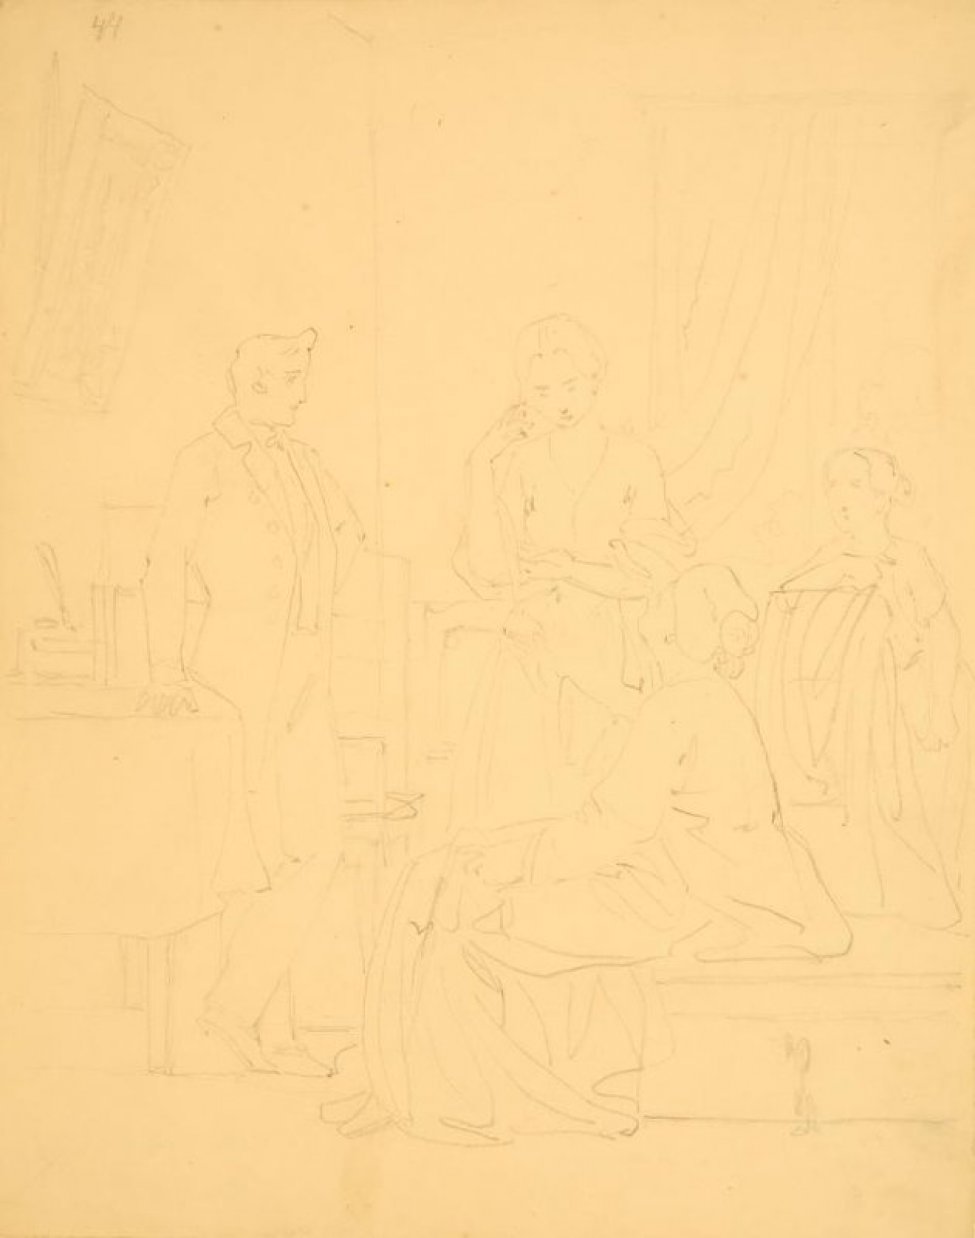 Изображена комната. Слева, опираясь правой рукой о стол,  стоит молодой человек. Справа от него - три женские фигуры. Все в костюмах середины 19 века.